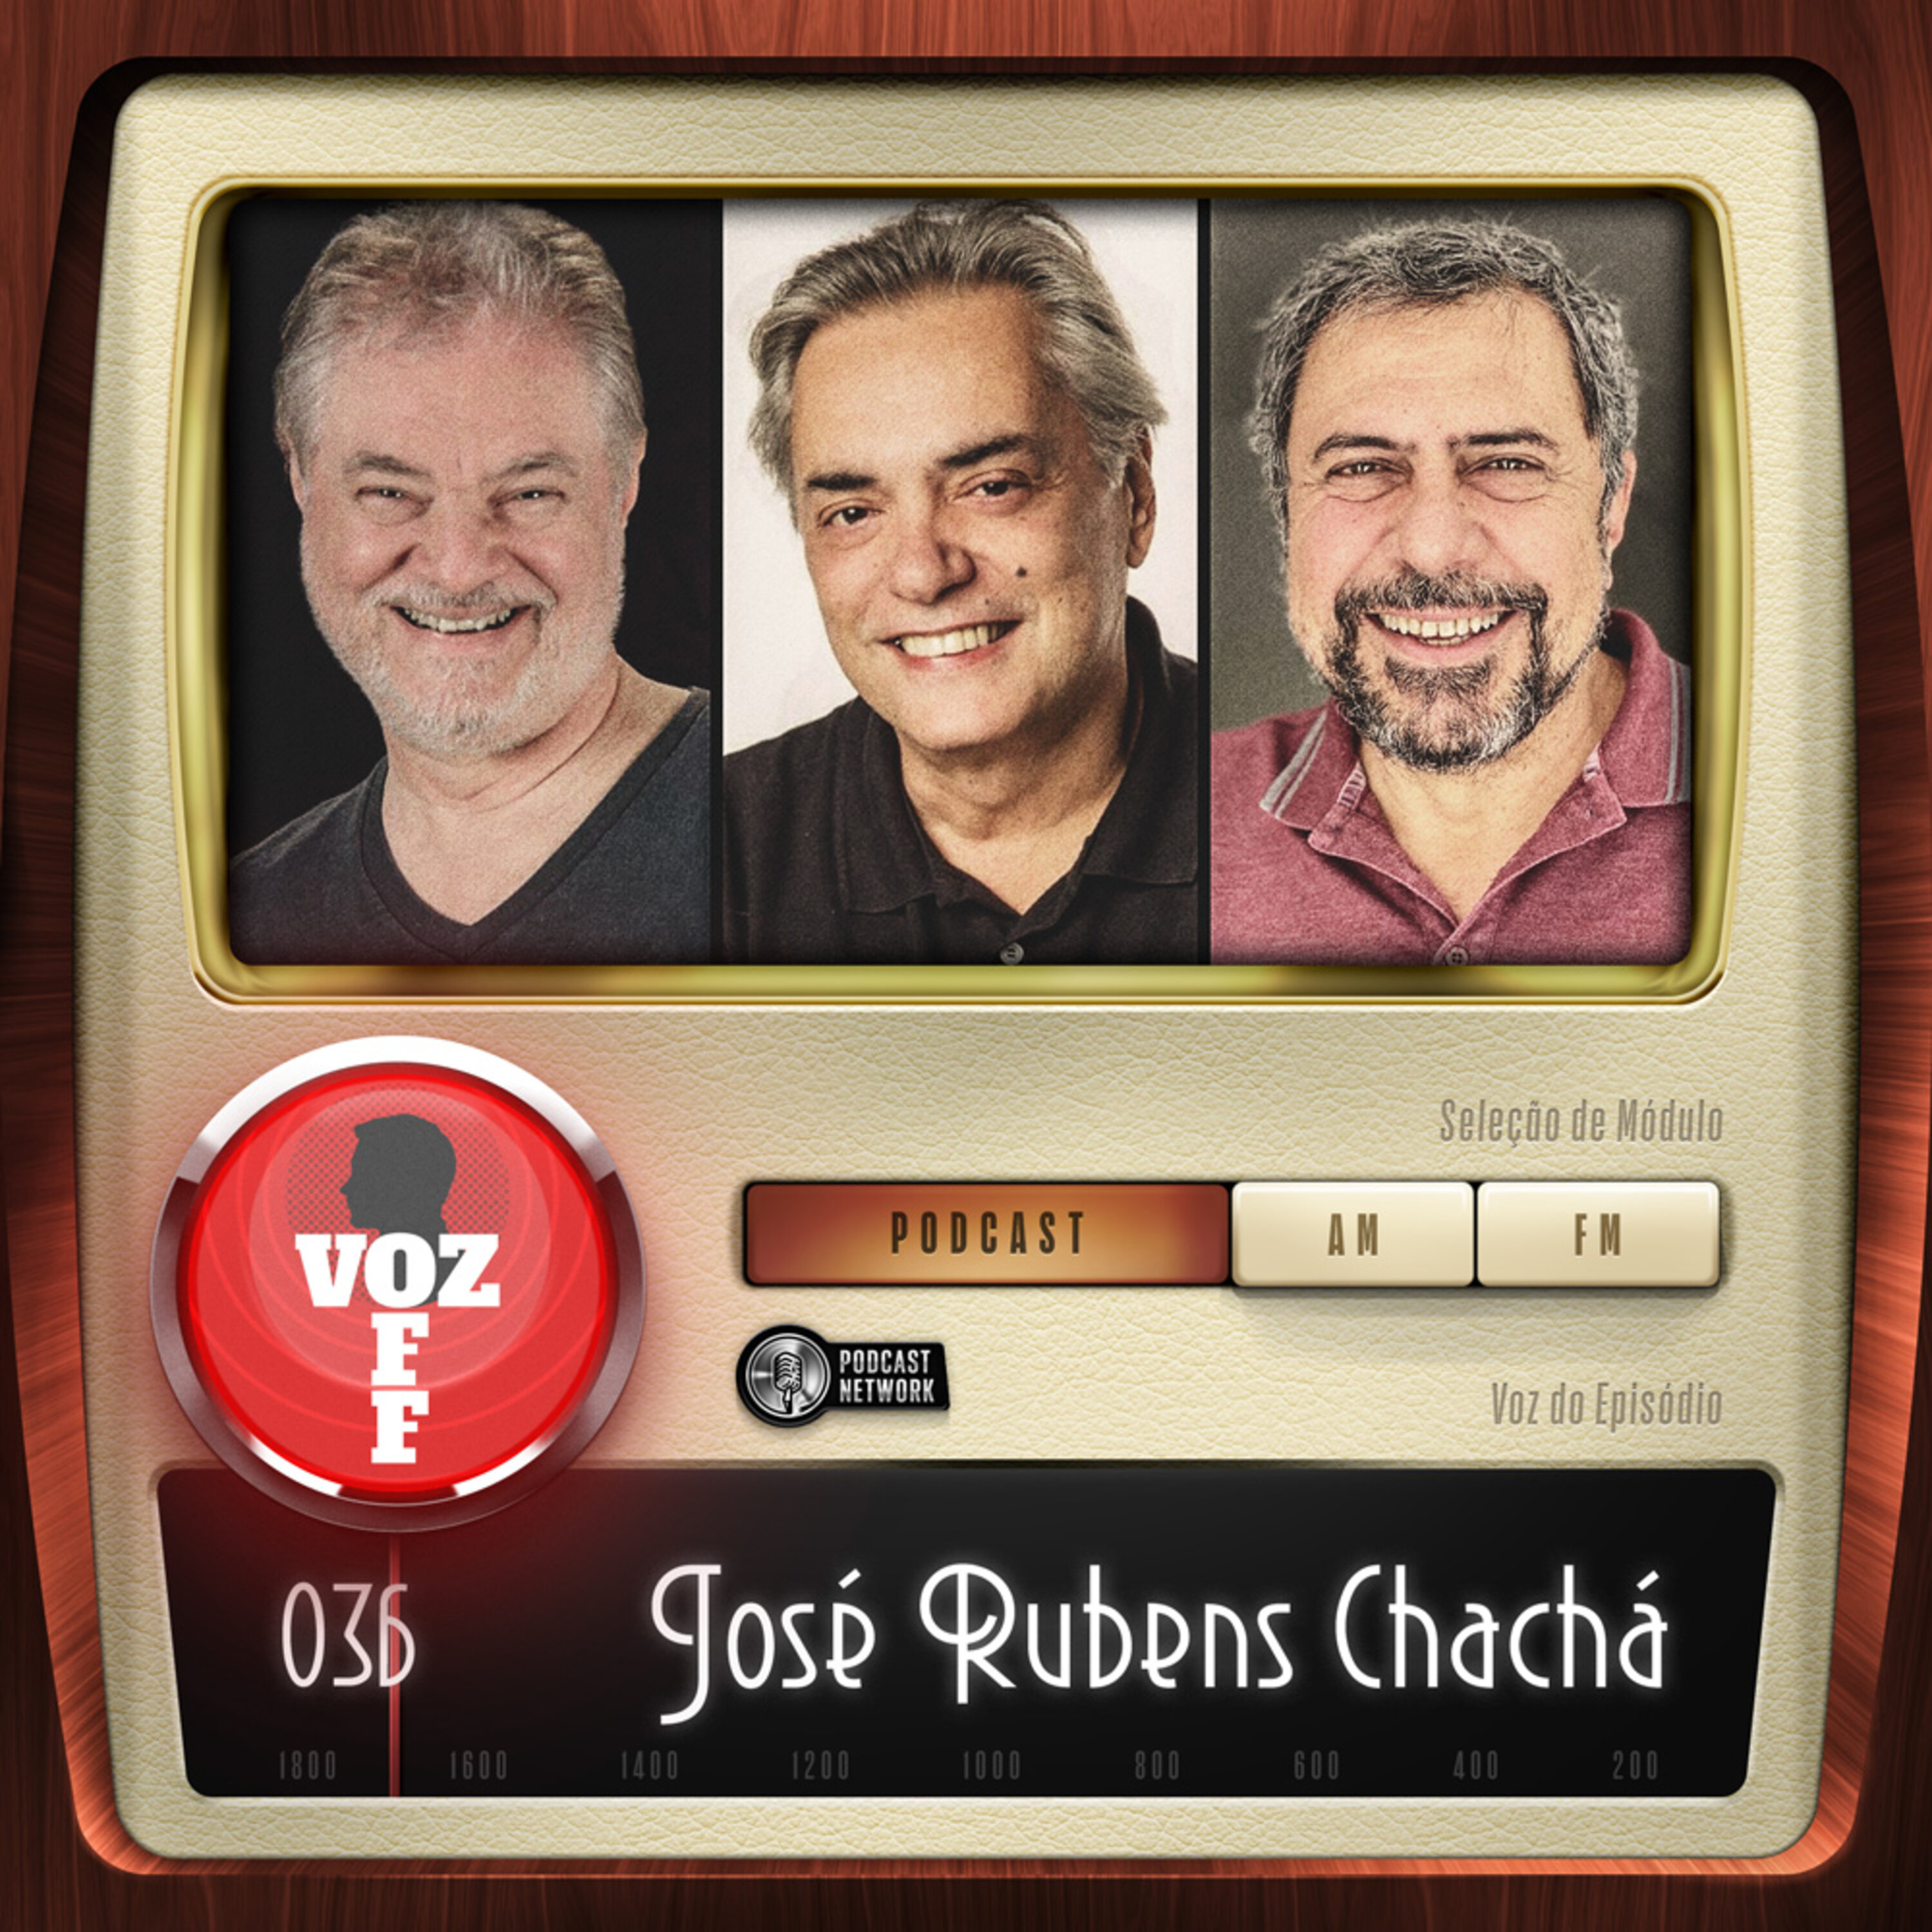 VOZ OFF 036 – José Rubens Chachá